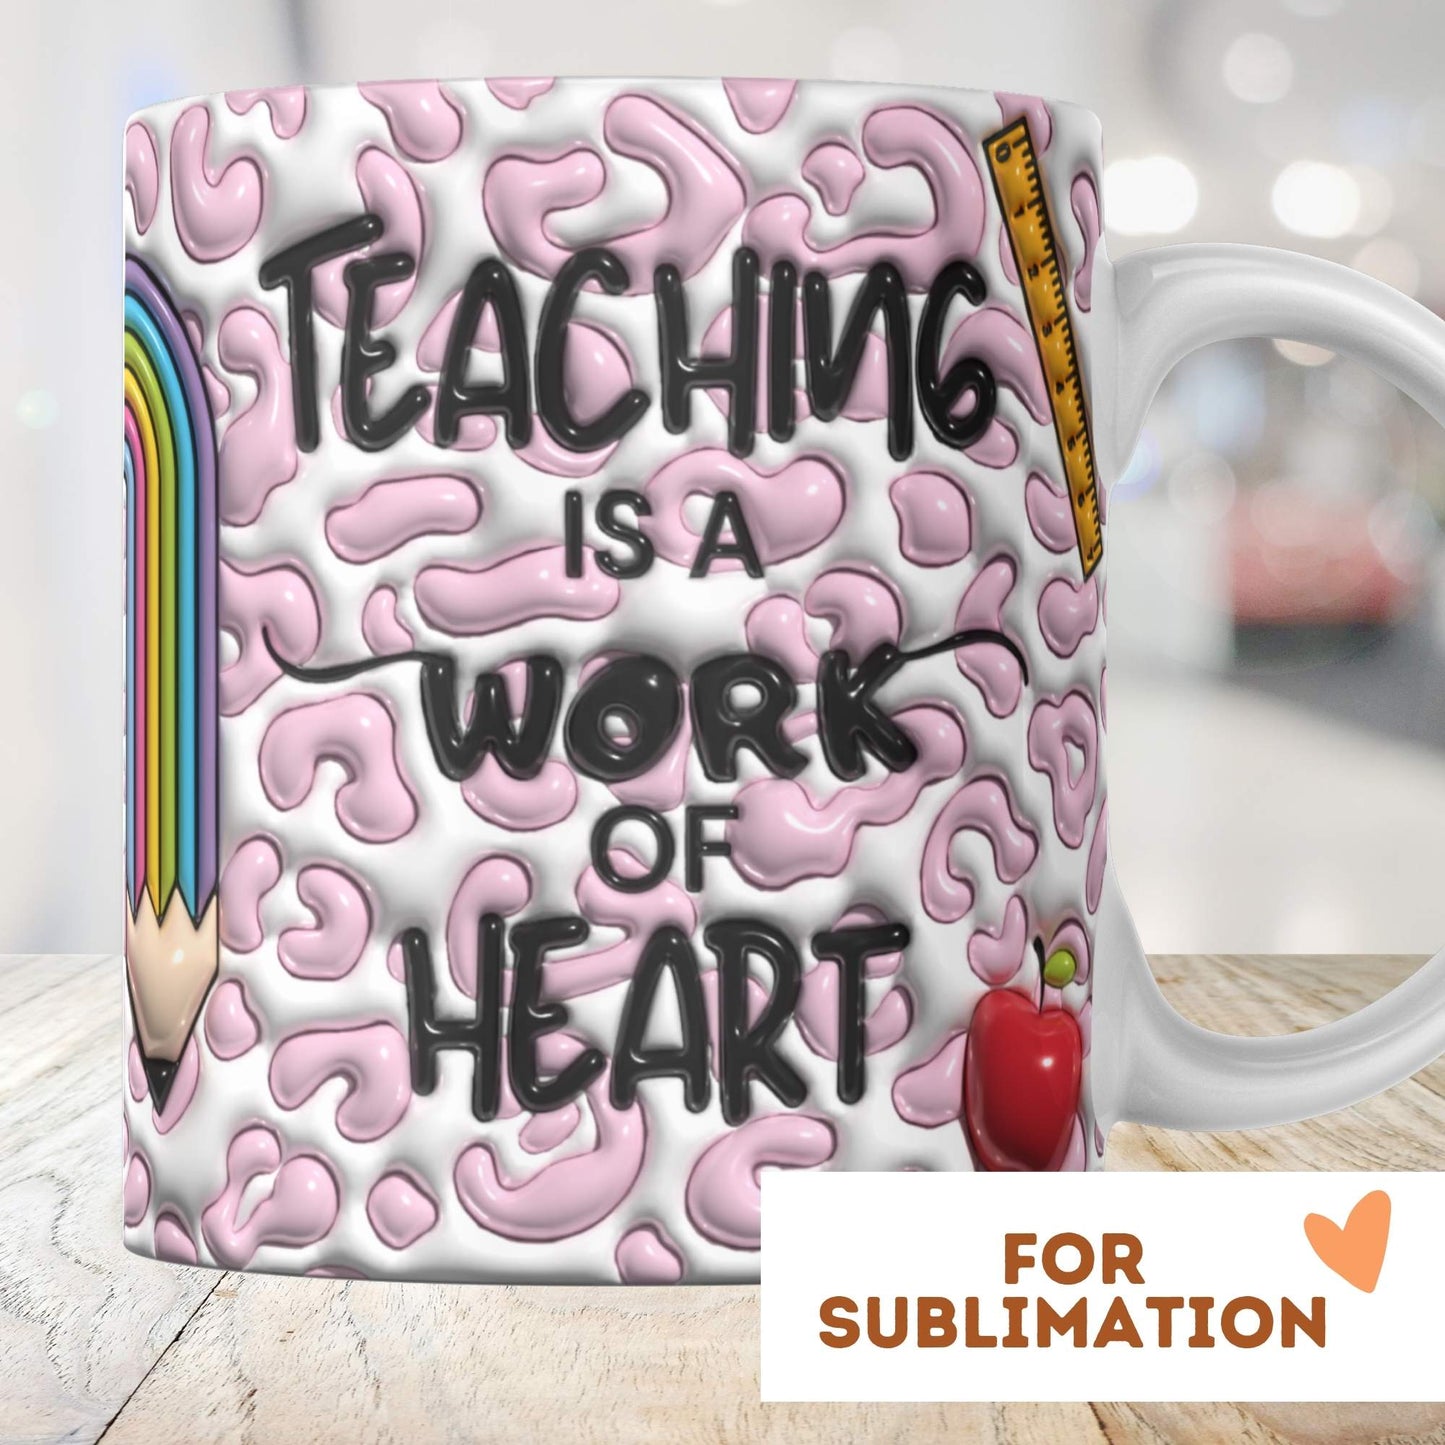 Teacher Is A Work Of Heart - 3D